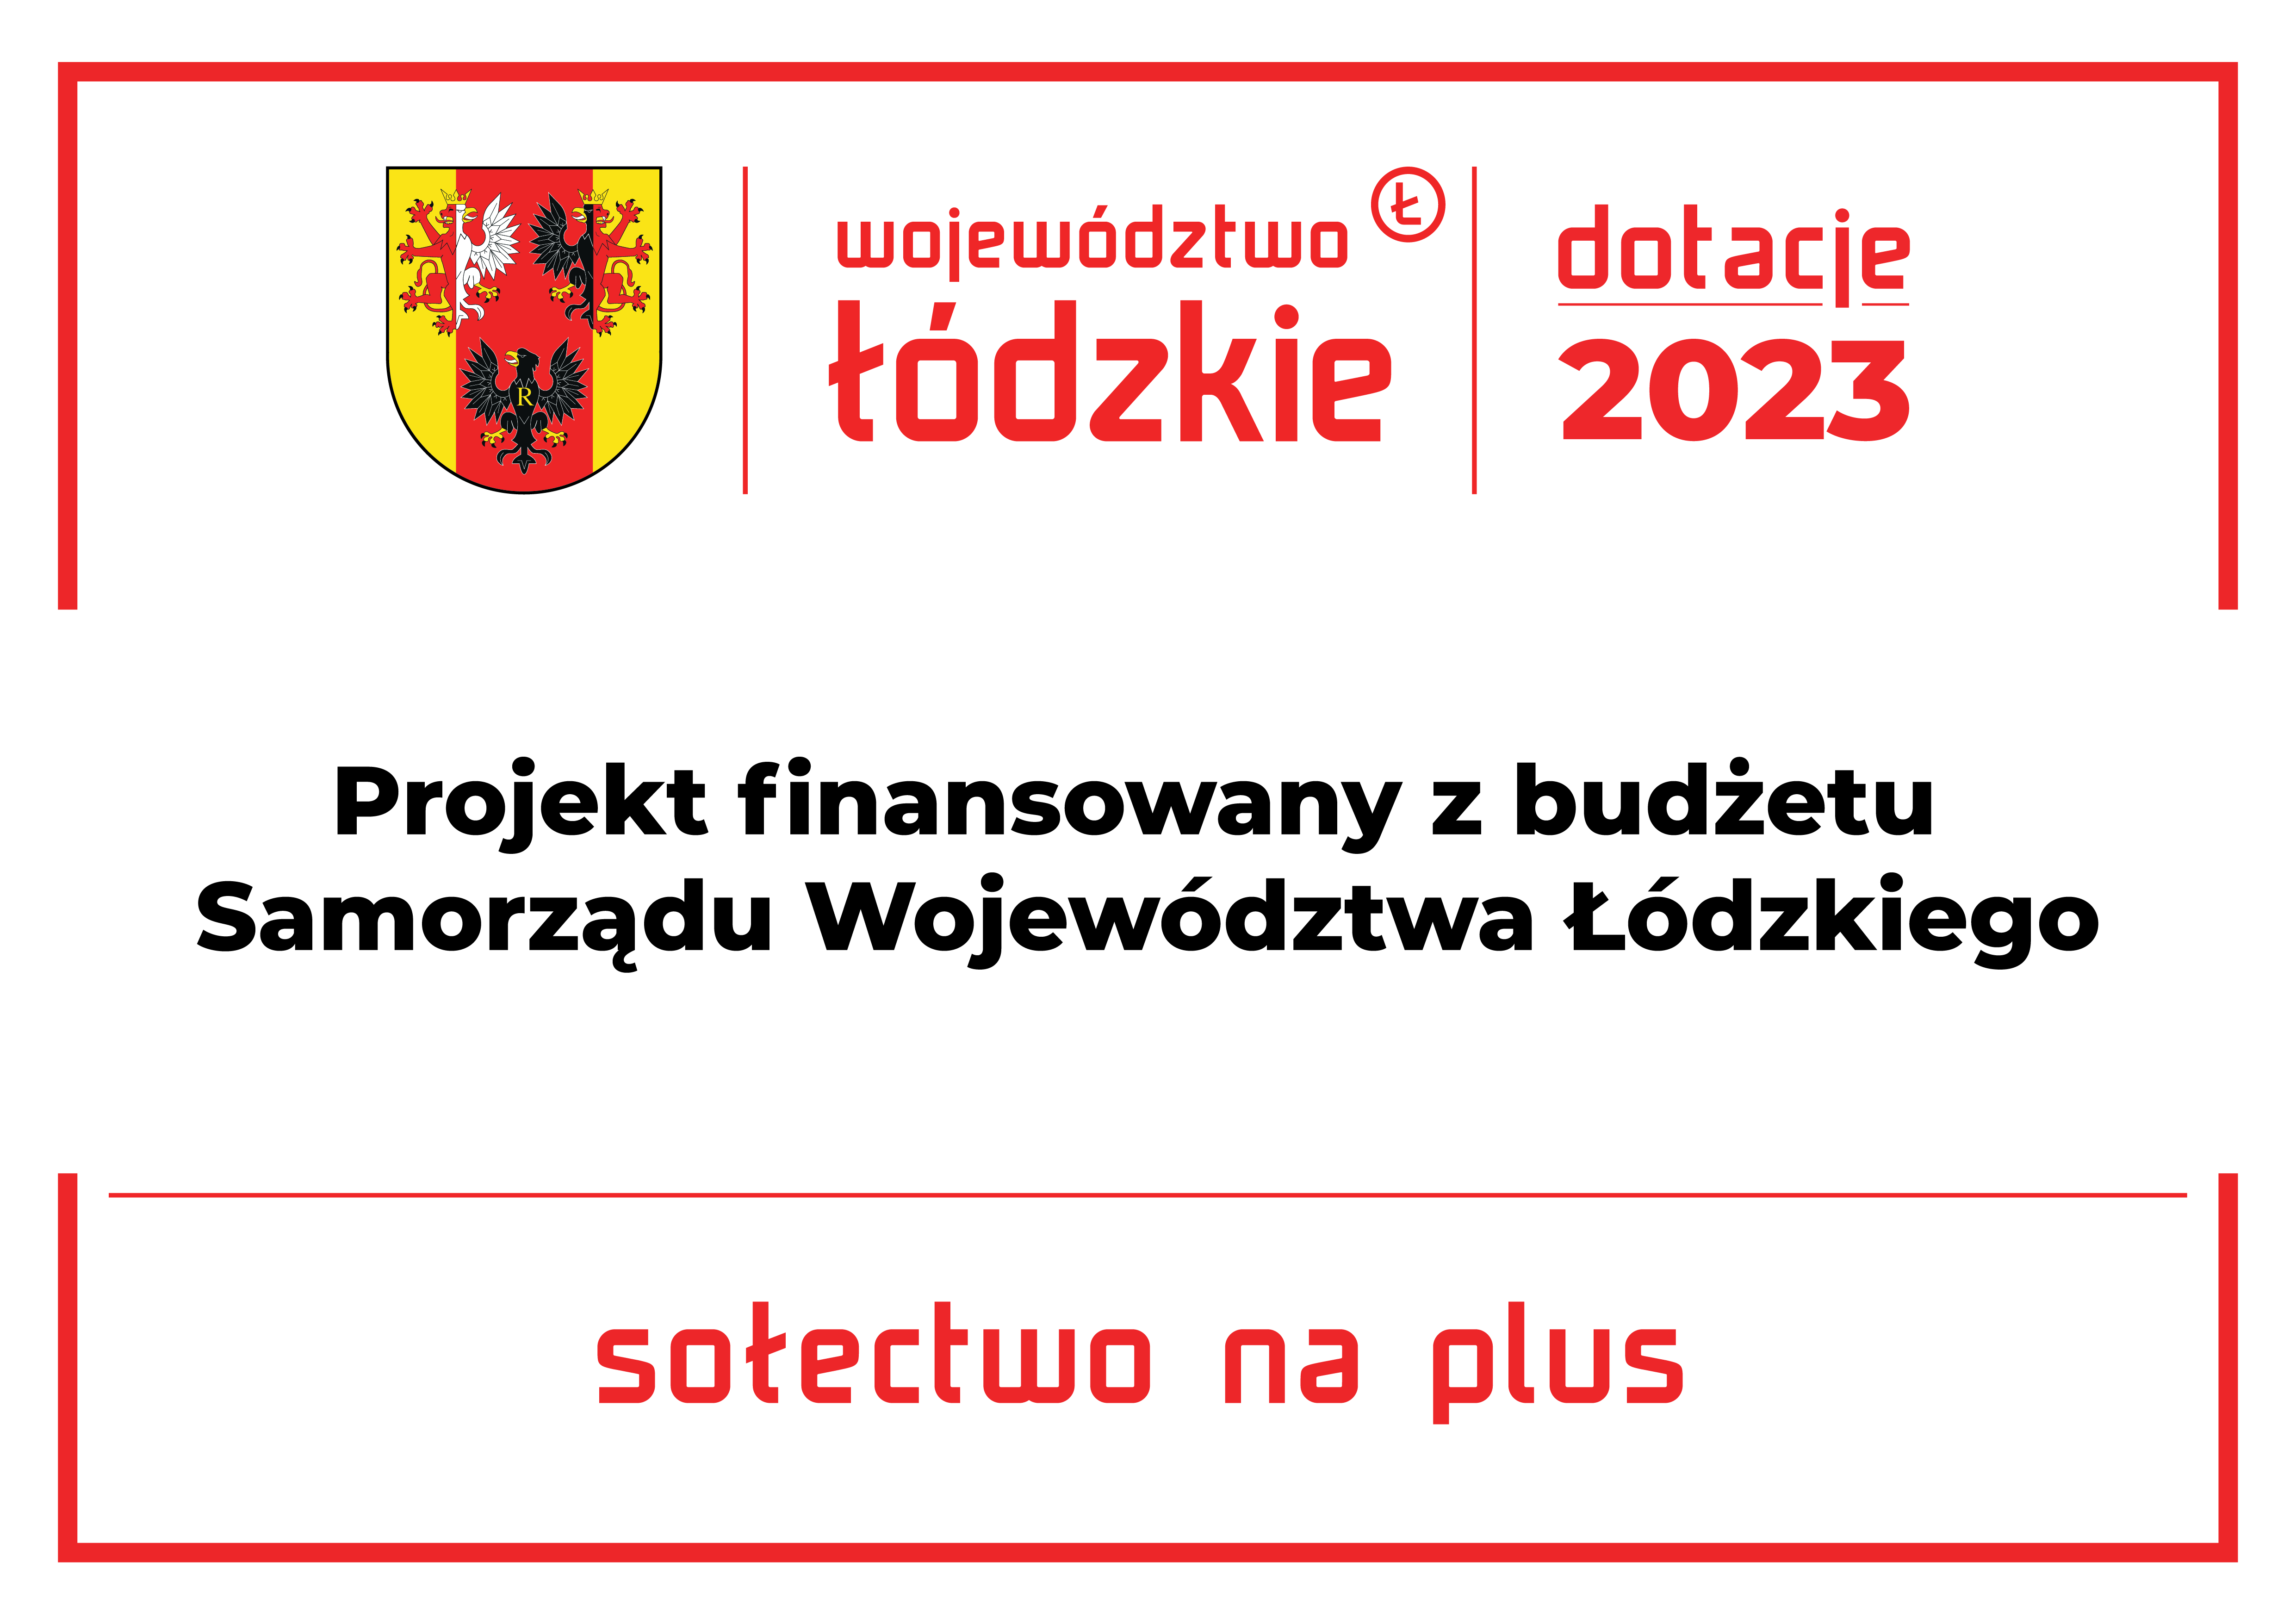 Zrealizowano 5 projektów sołeckich dofinansowanych przez Województwo Łódzkie